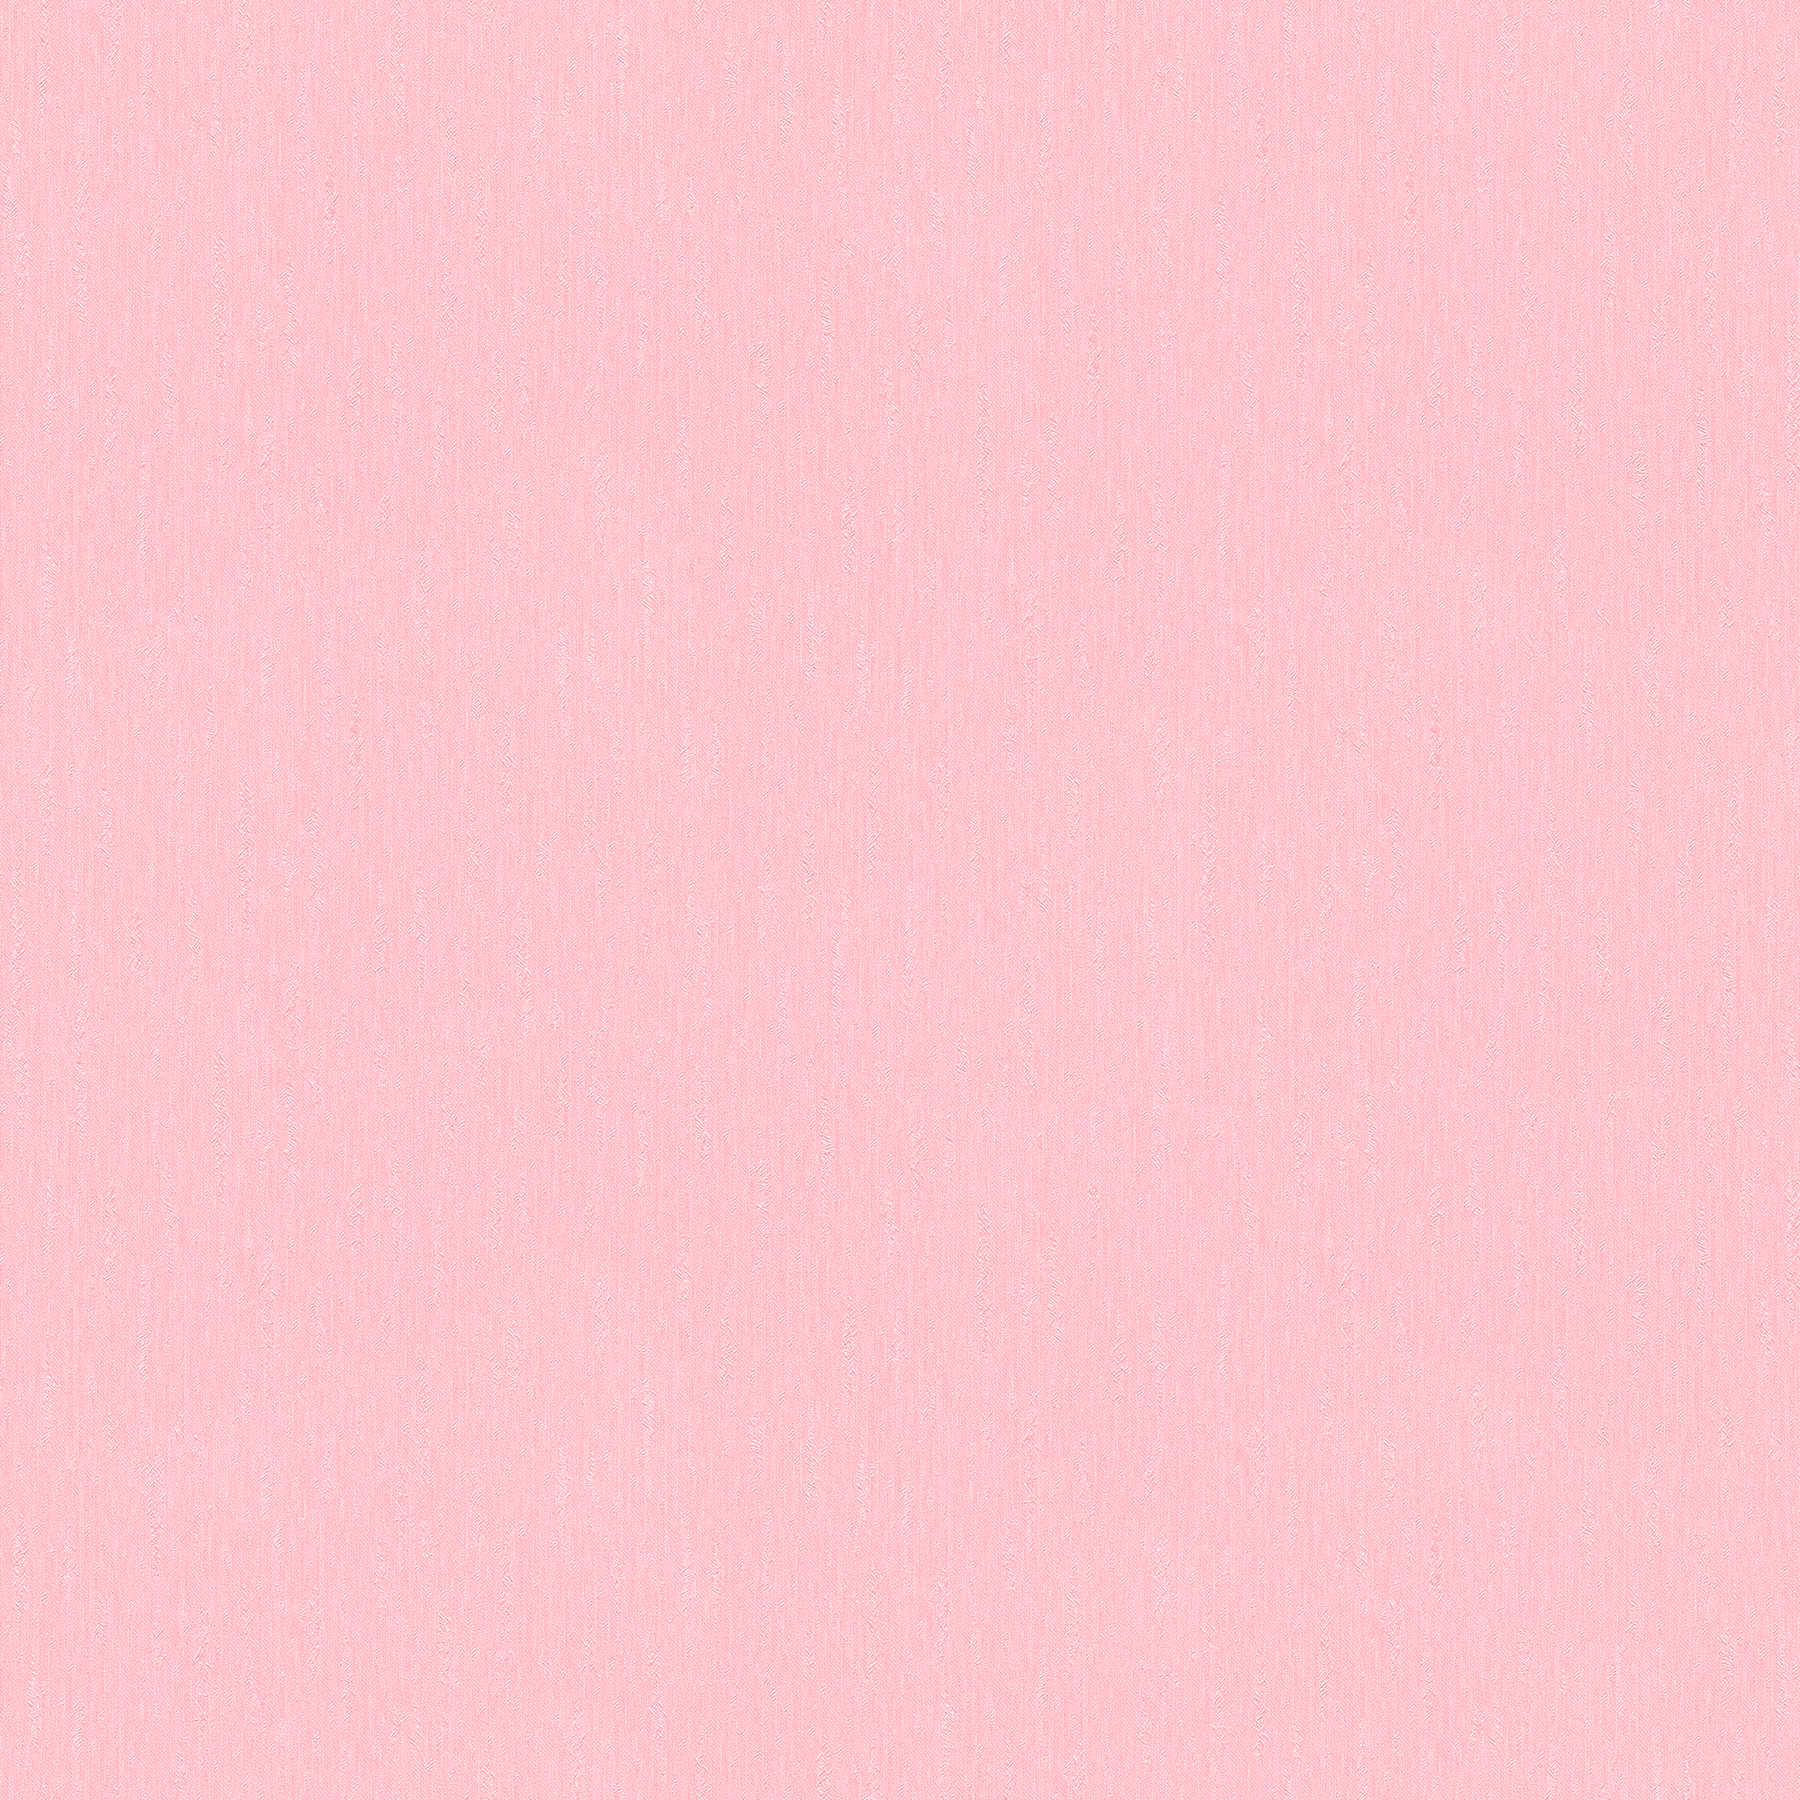 Carta da parati rosa in tessuto non tessuto tinta unita rosa chiaro con superficie strutturata
